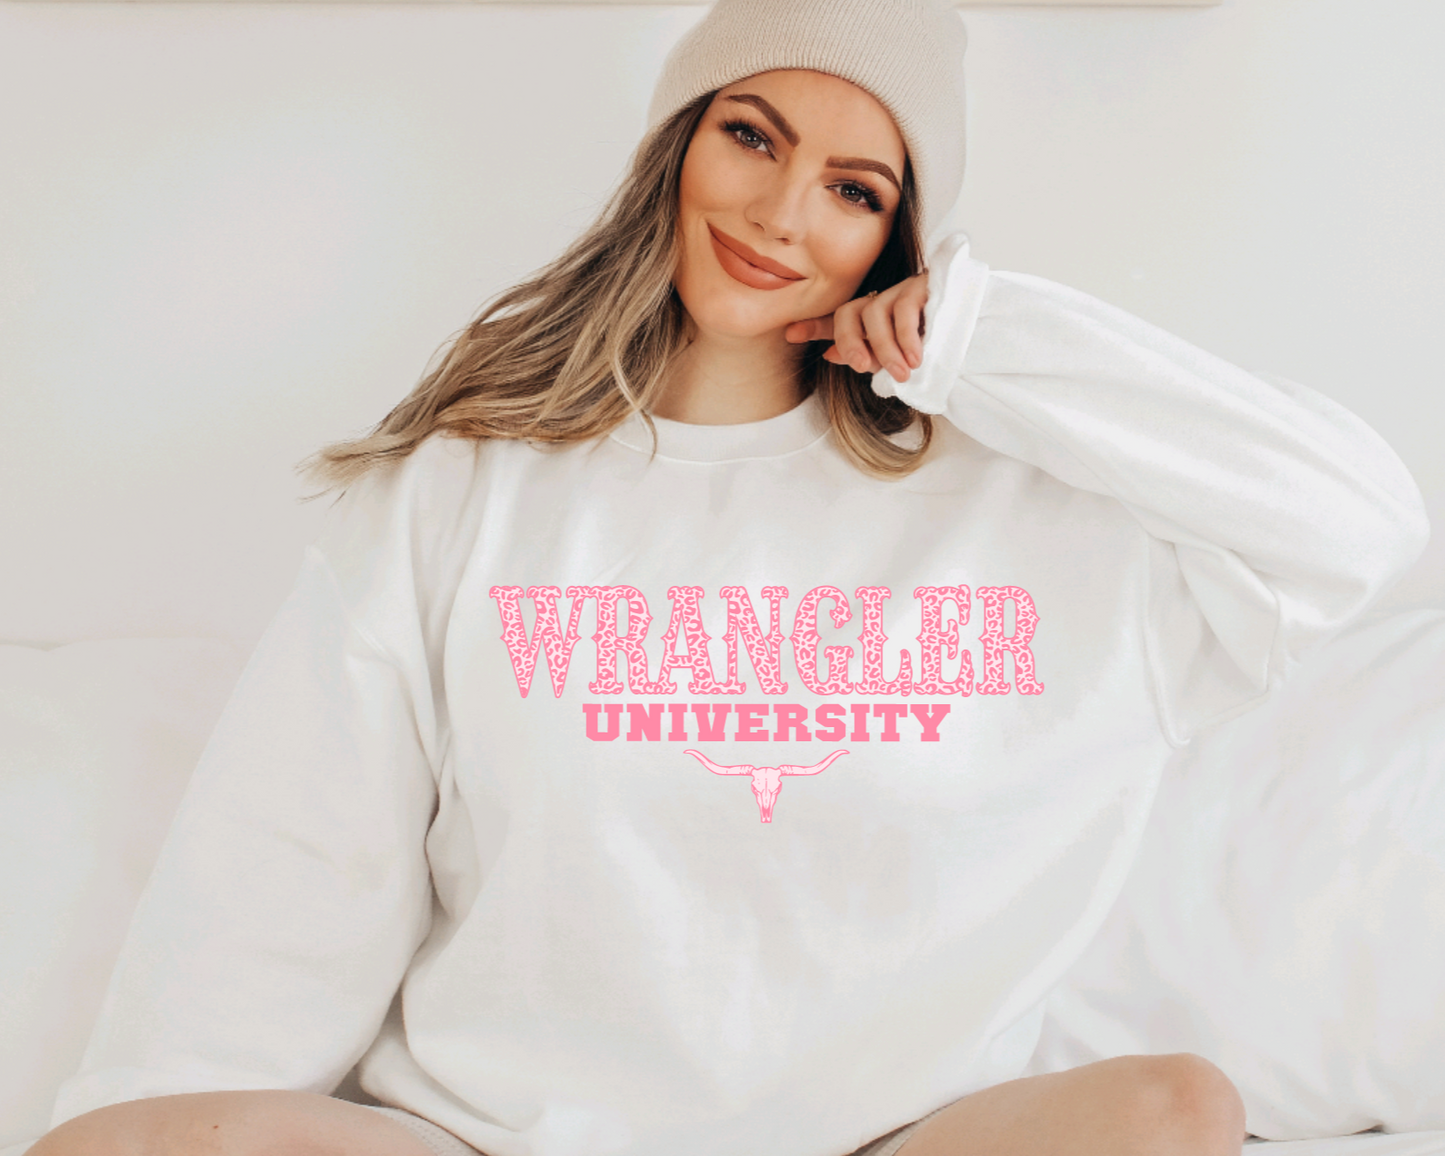 Wrangler University Sweatshirt